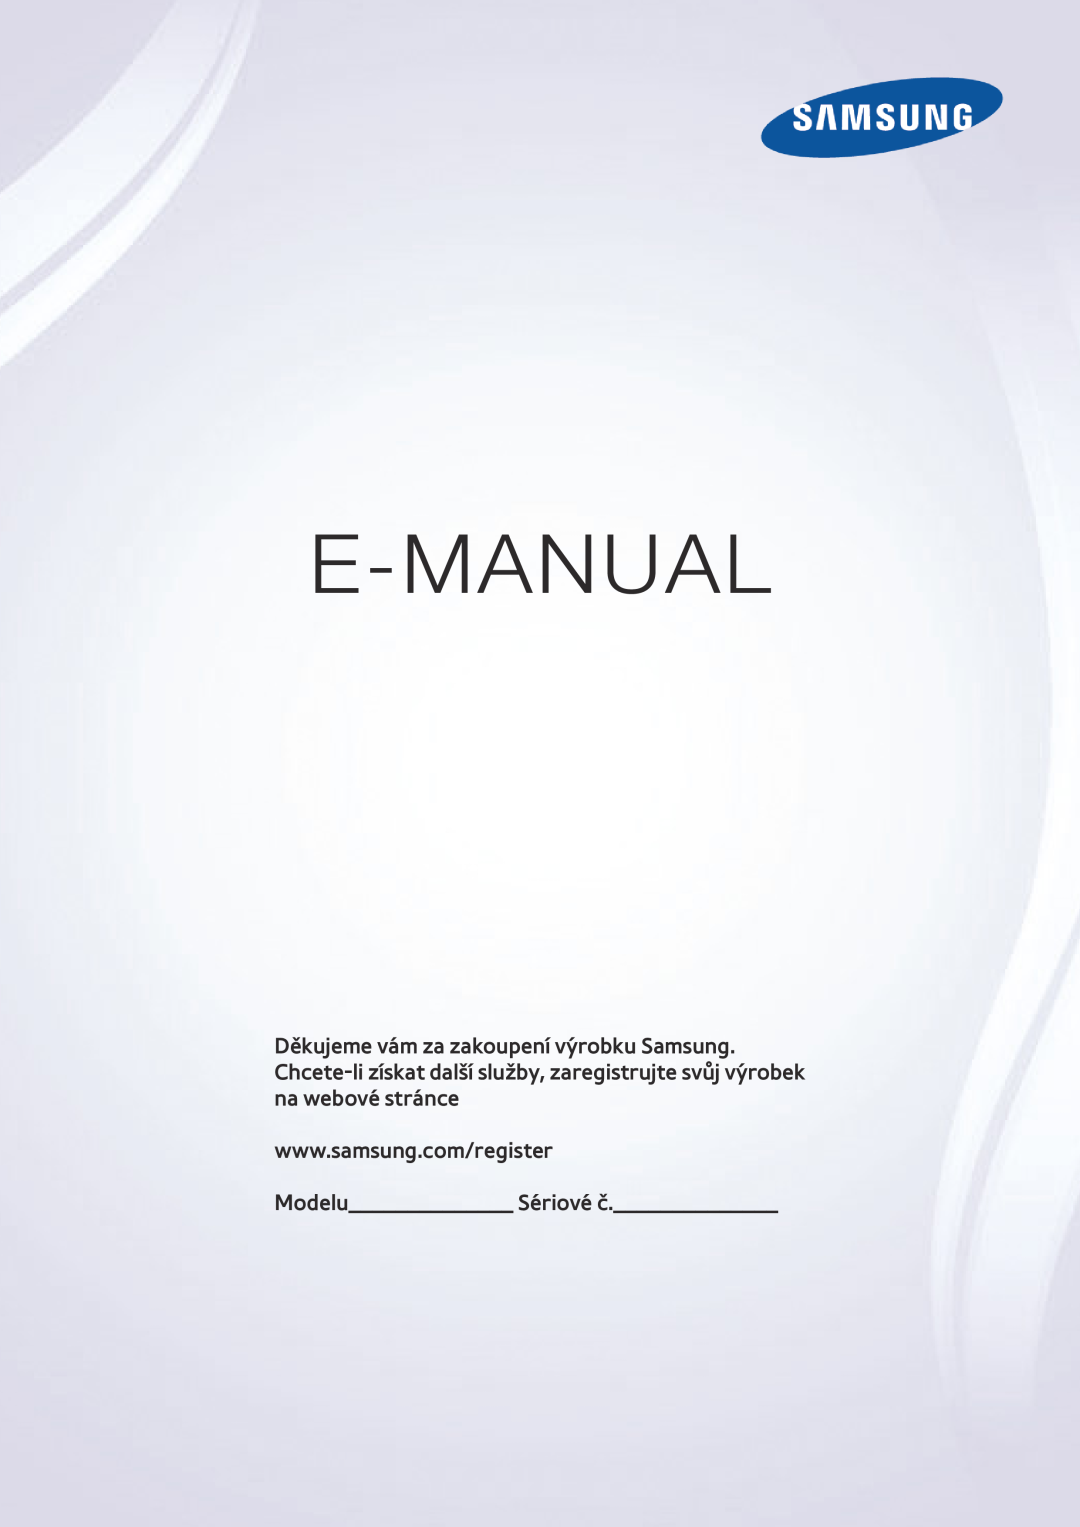 Samsung UE55J6300AKXXC, UE48J6200AWXXH manual E-Manual, Gracias por adquirir este producto Samsung, Modelo Serial No 